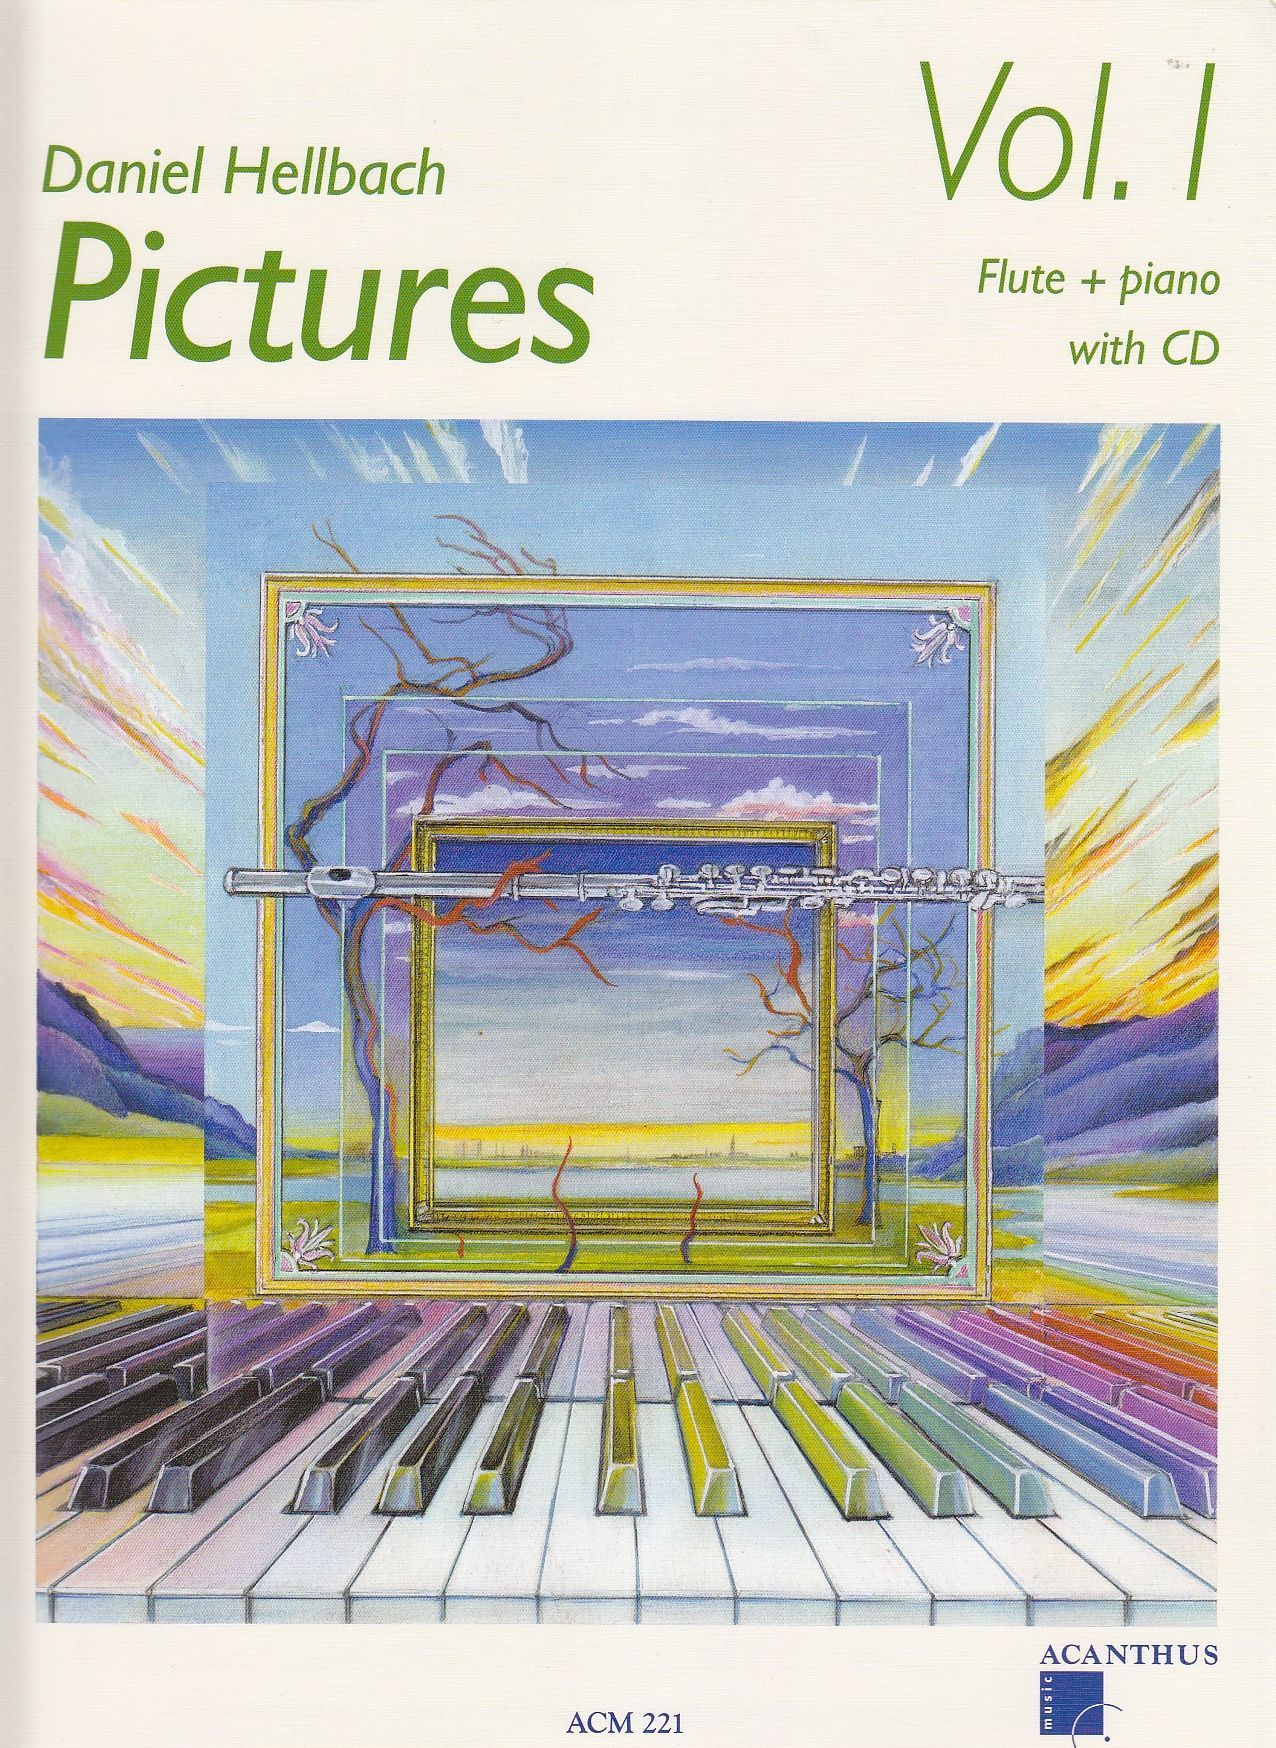 Noten Pictures Daniel Hellbach 1 Flute Querflöte Piano acanthus ACM 221 incl. CD